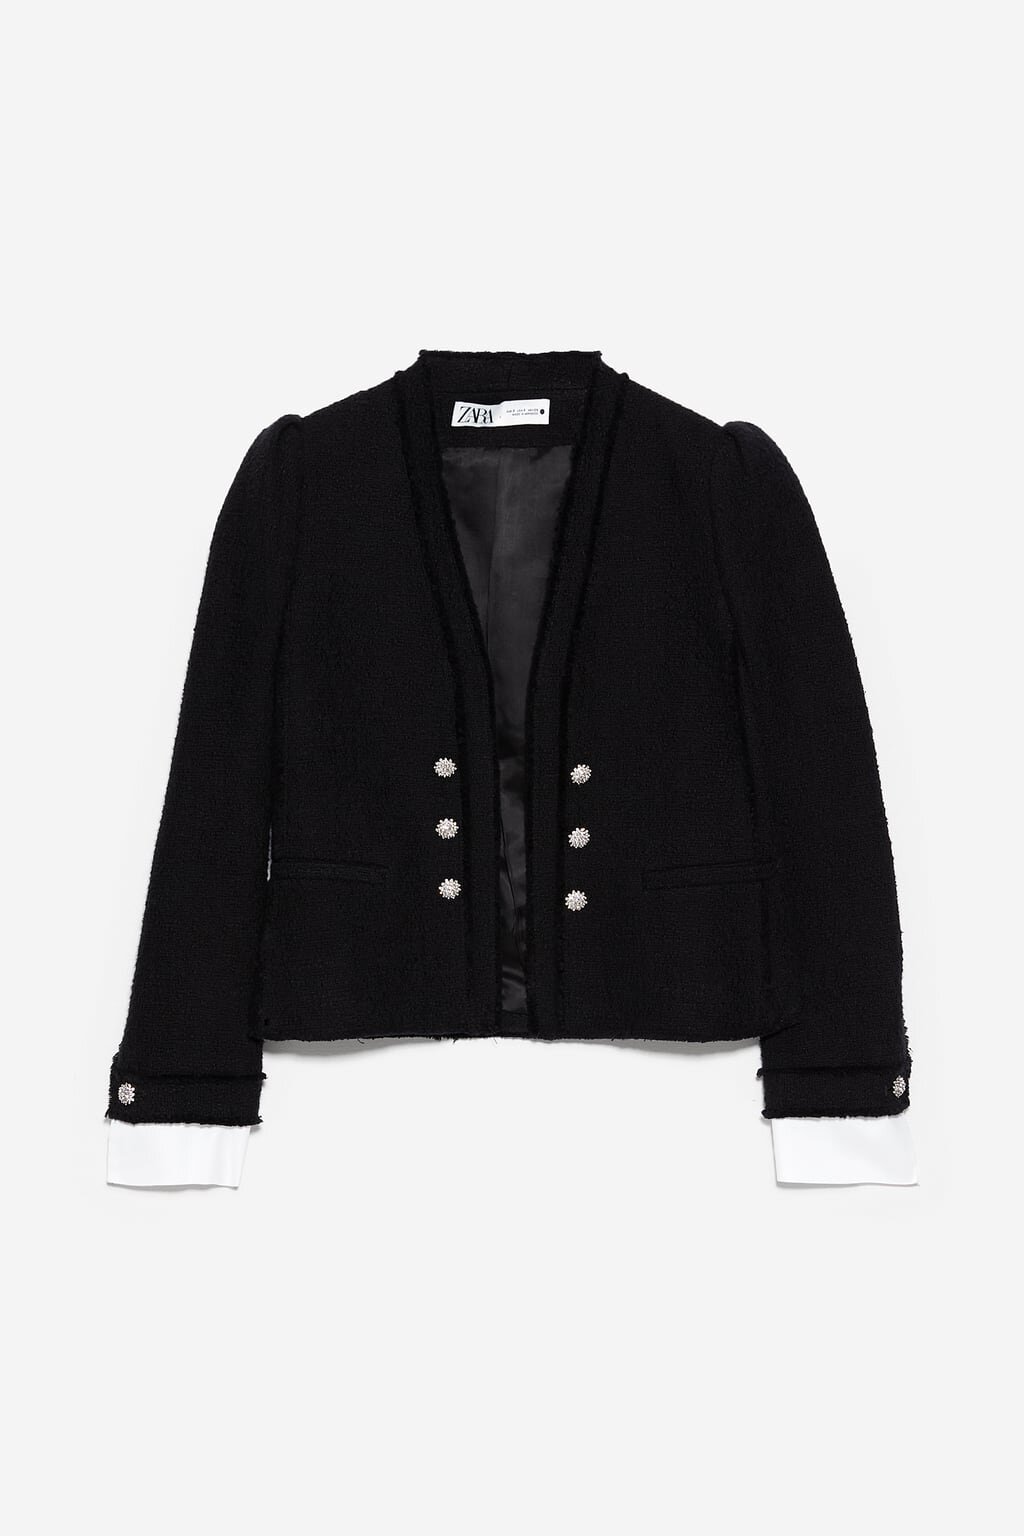 Zara Tweed Jacket with Poplin in Black.jpg